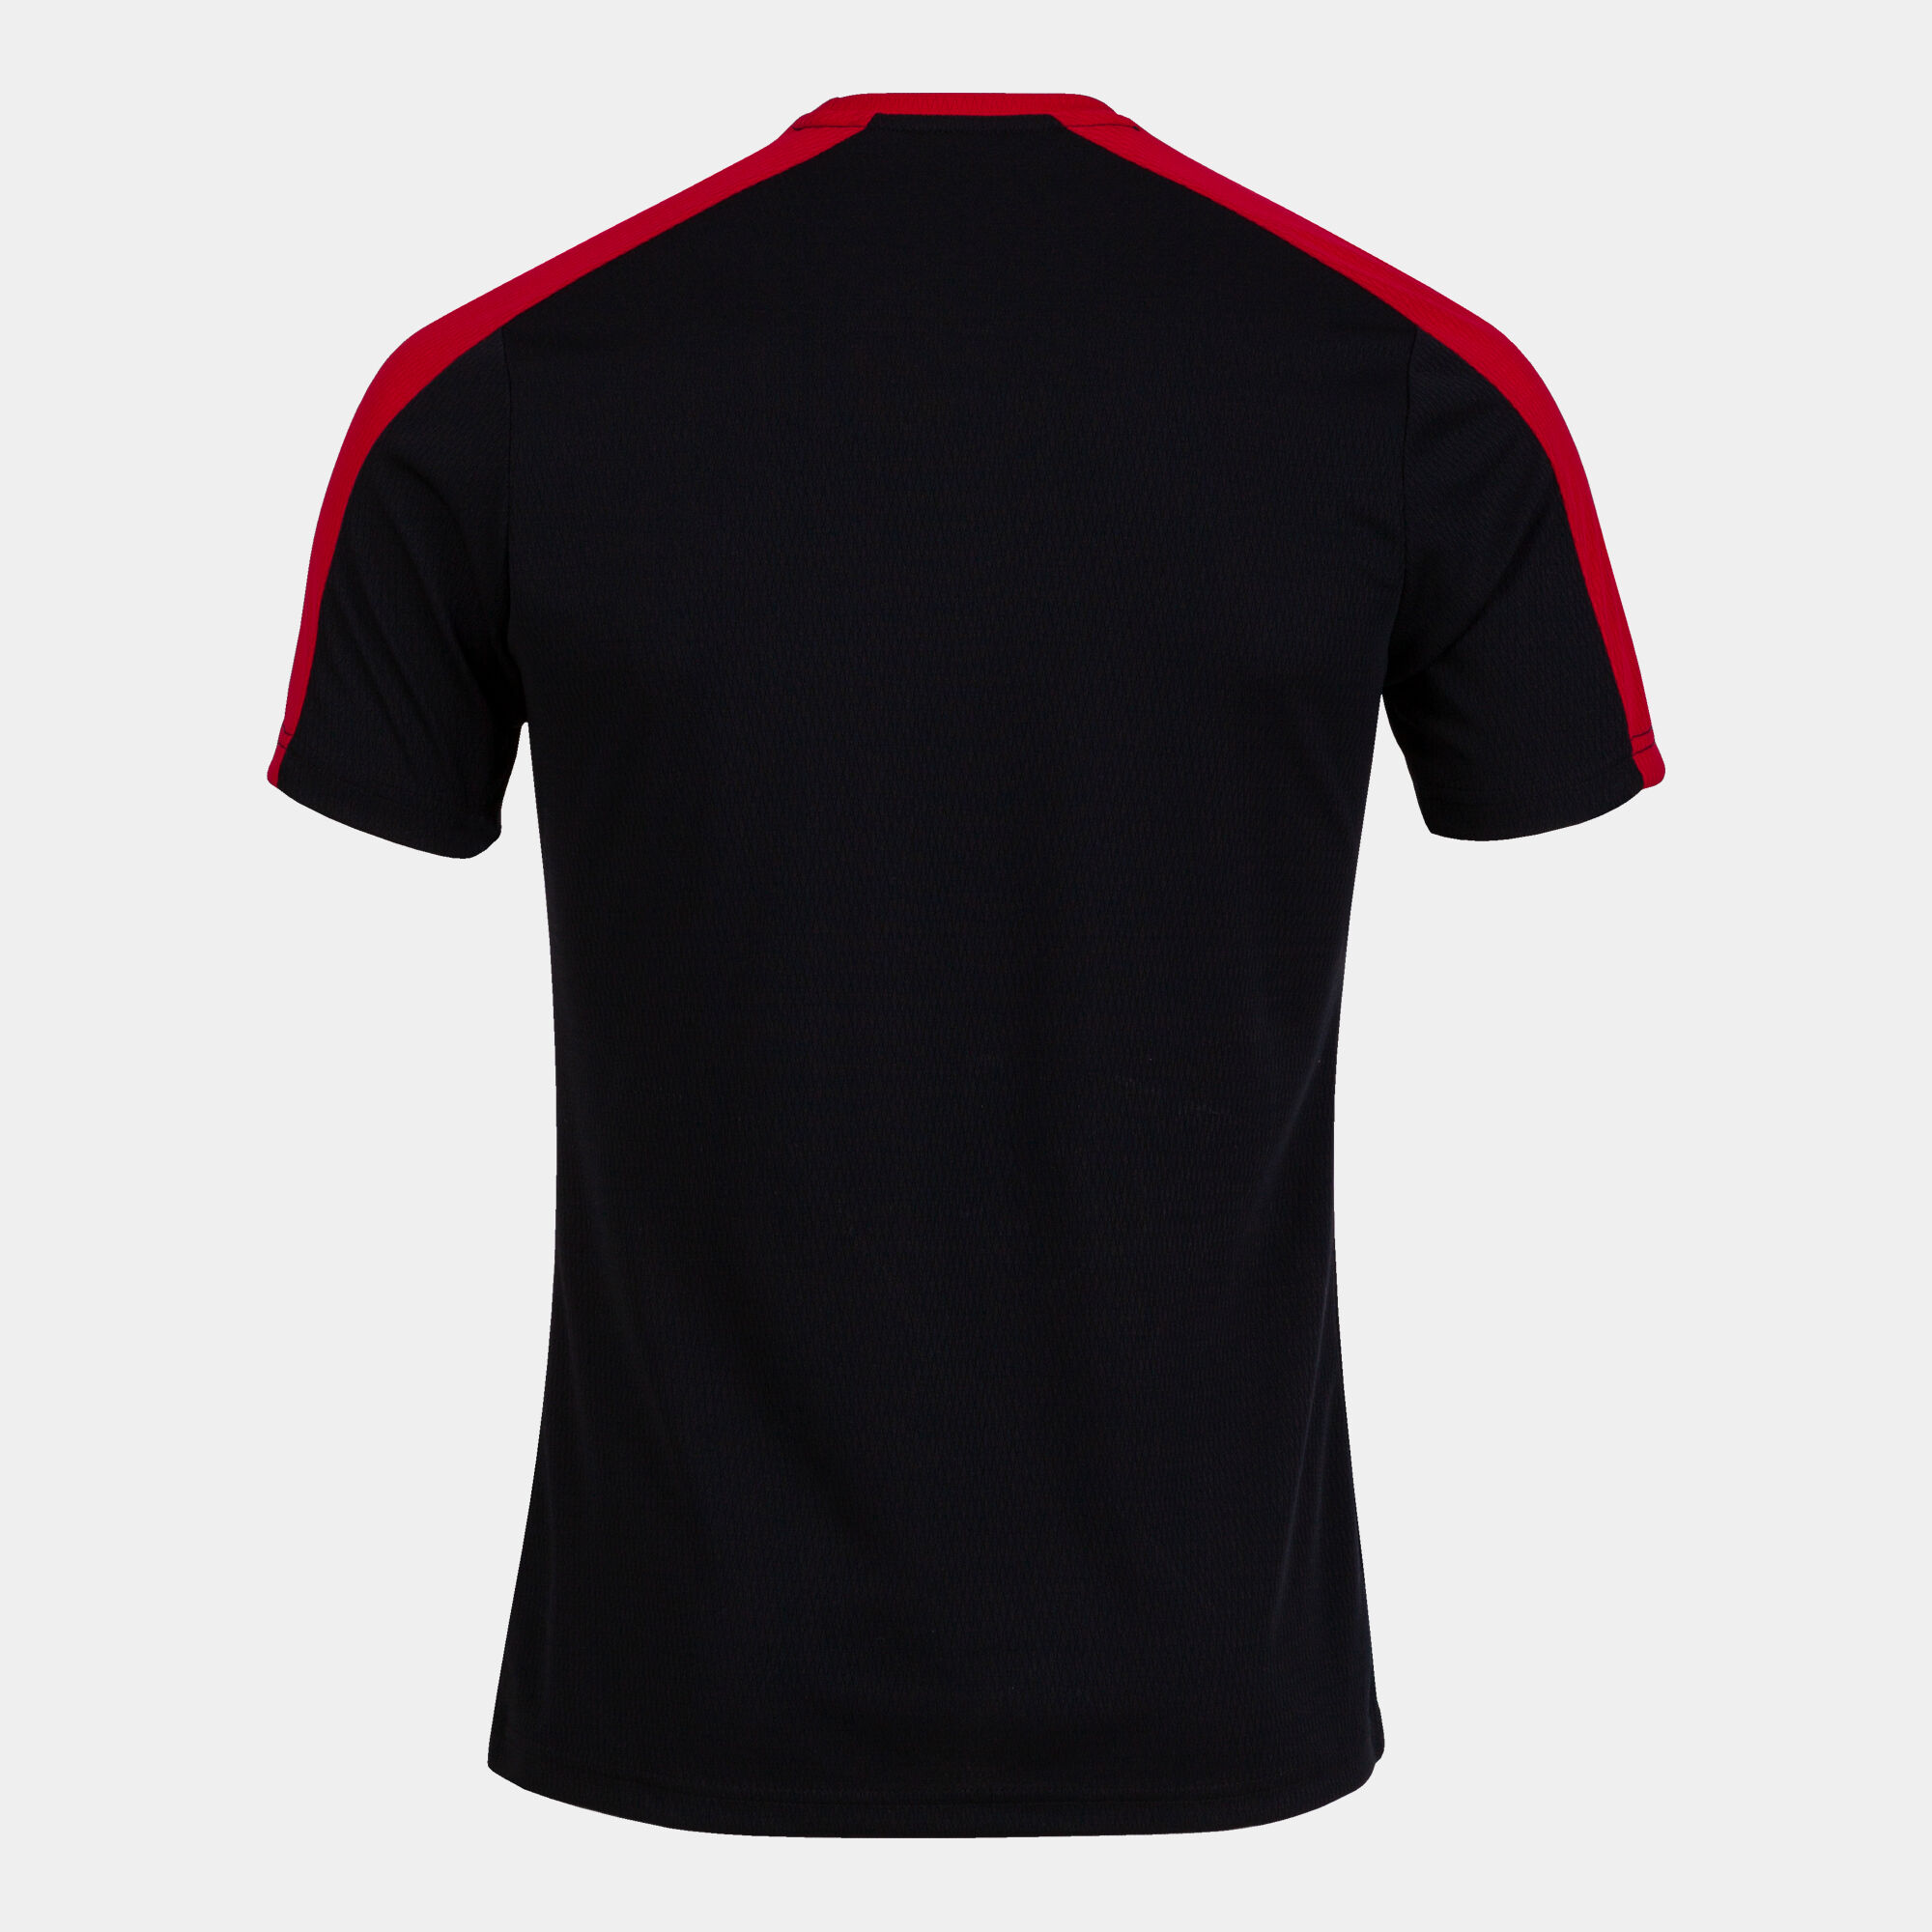 Tricou cu mânecă scurtă bărbaȚi Eco Championship negru roșu